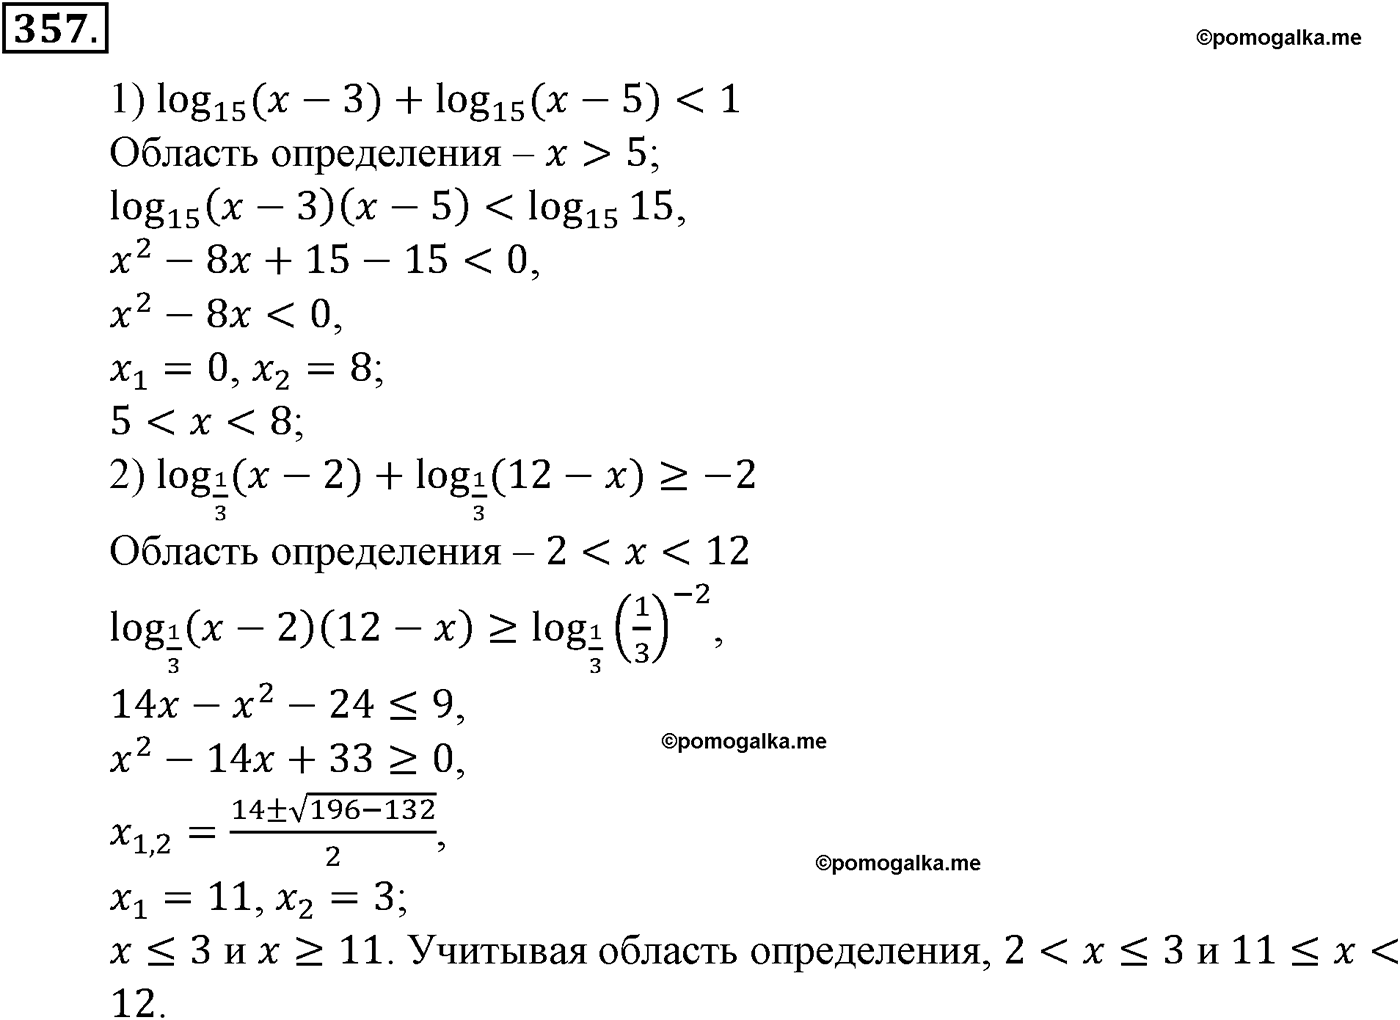 разбор задачи №357 по алгебре за 10-11 класс из учебника Алимова, Колягина